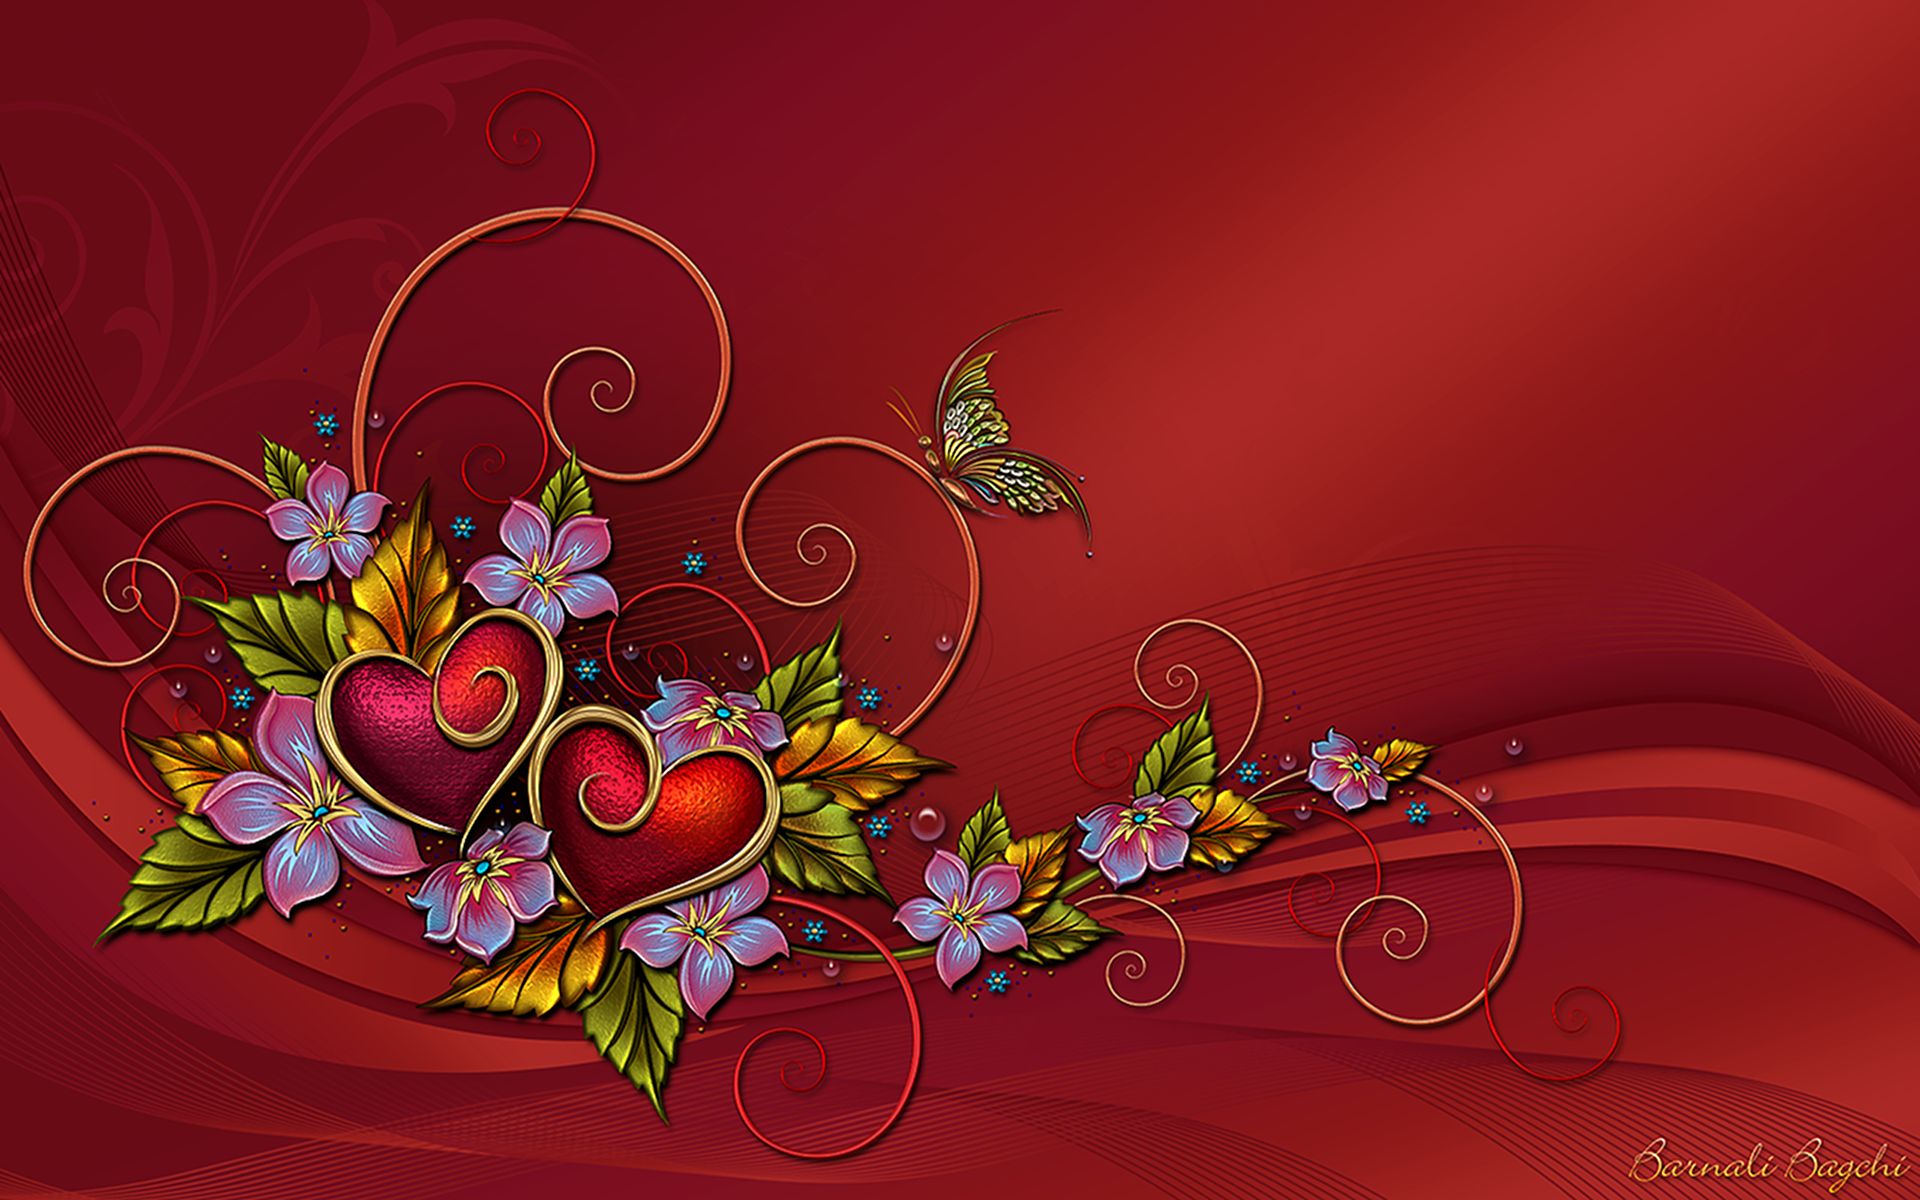 Скачать обои бесплатно Цветок, Красный, Бабочка, Дизайн, Сердце, Художественные картинка на рабочий стол ПК